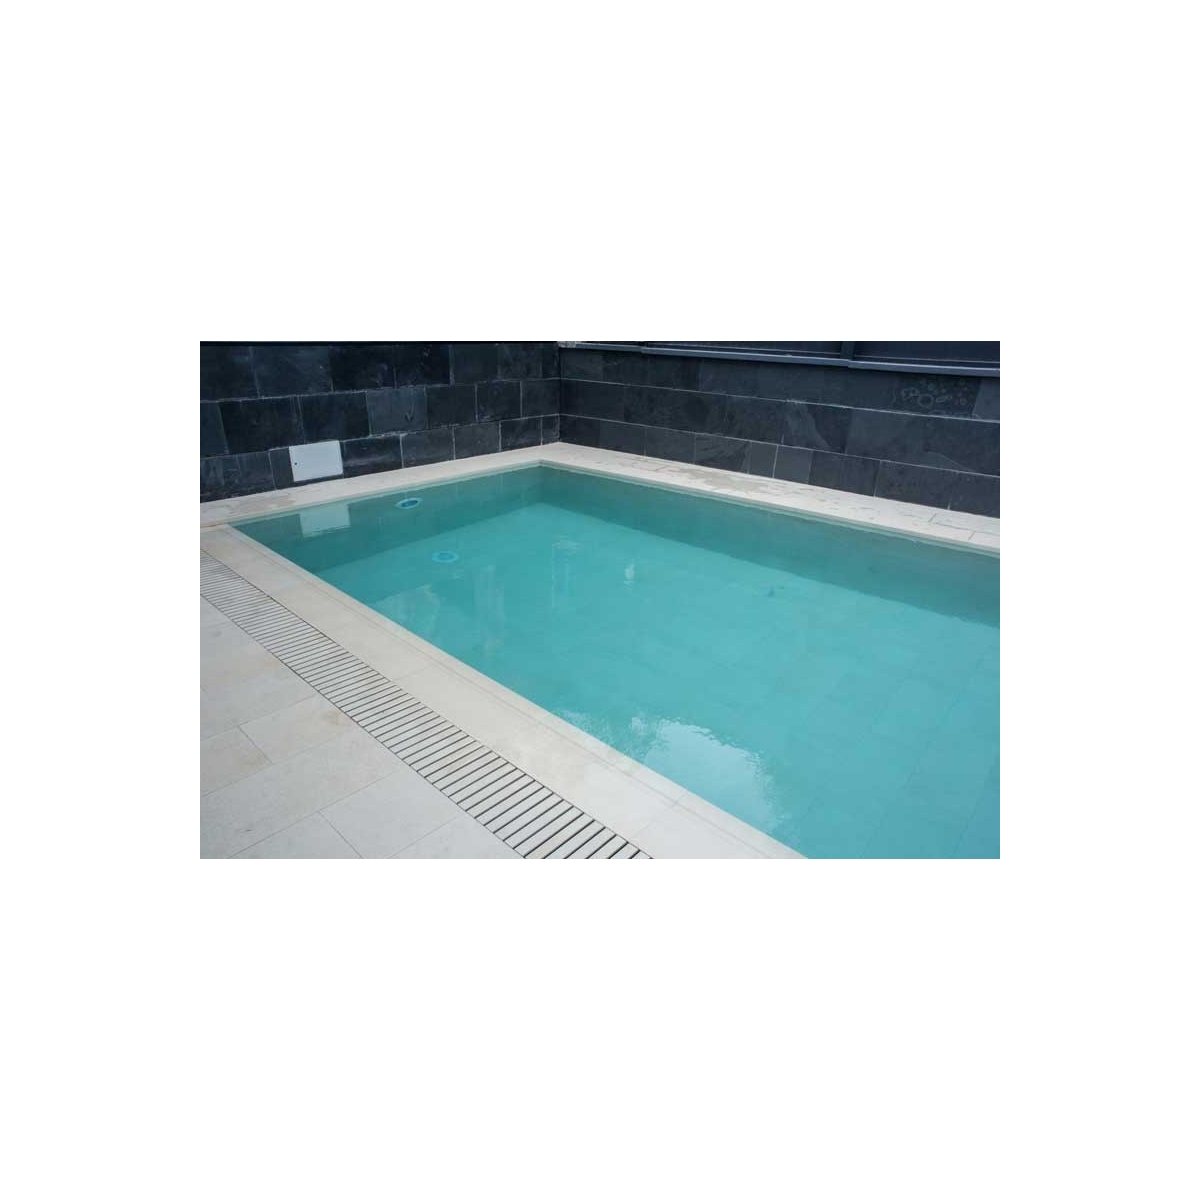 Borde de piscina recto Tao Beige L62 62,6x31,7x3,8 Rosagres